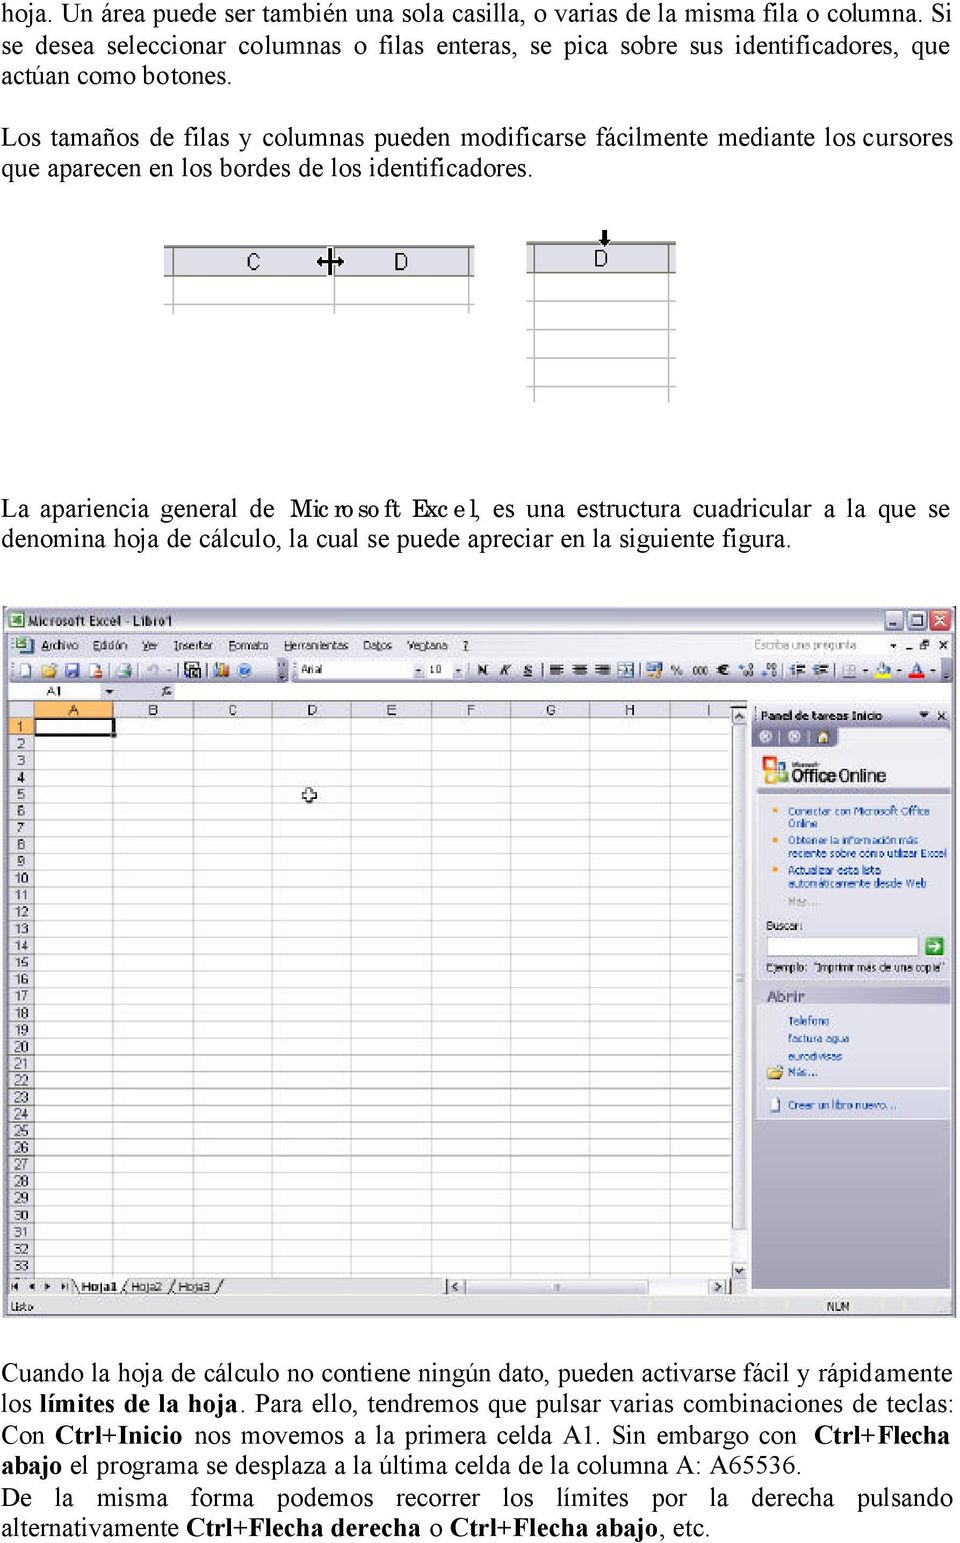 La apariencia general de Microsoft Excel, es una estructura cuadricular a la que se denomina hoja de cálculo, la cual se puede apreciar en la siguiente figura.